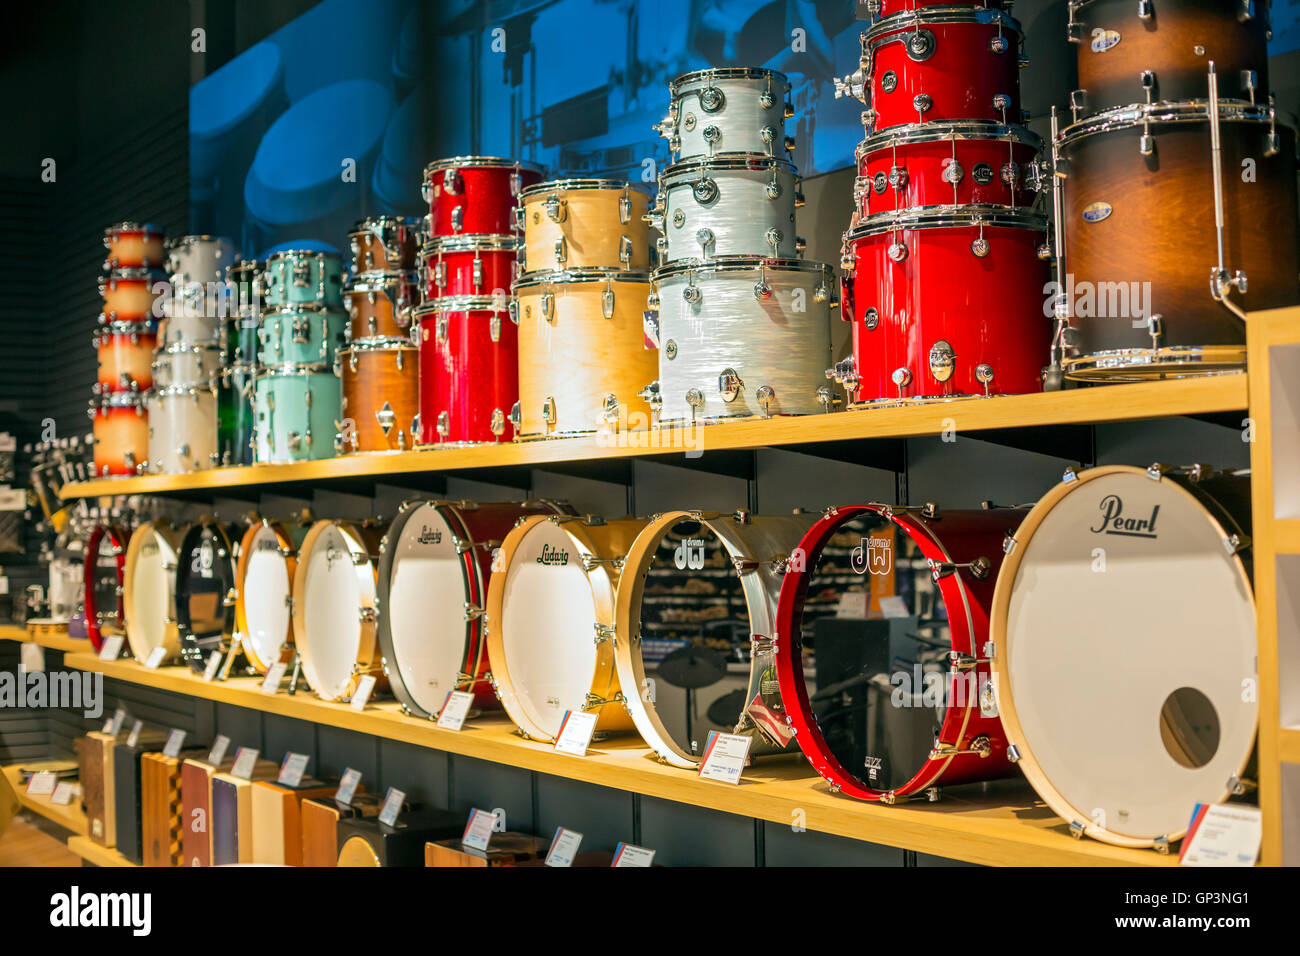 Fort Wayne, Indiana - i tamburi in mostra presso lo Sweetwater Strumenti di musica & Pro Audio store. Foto Stock